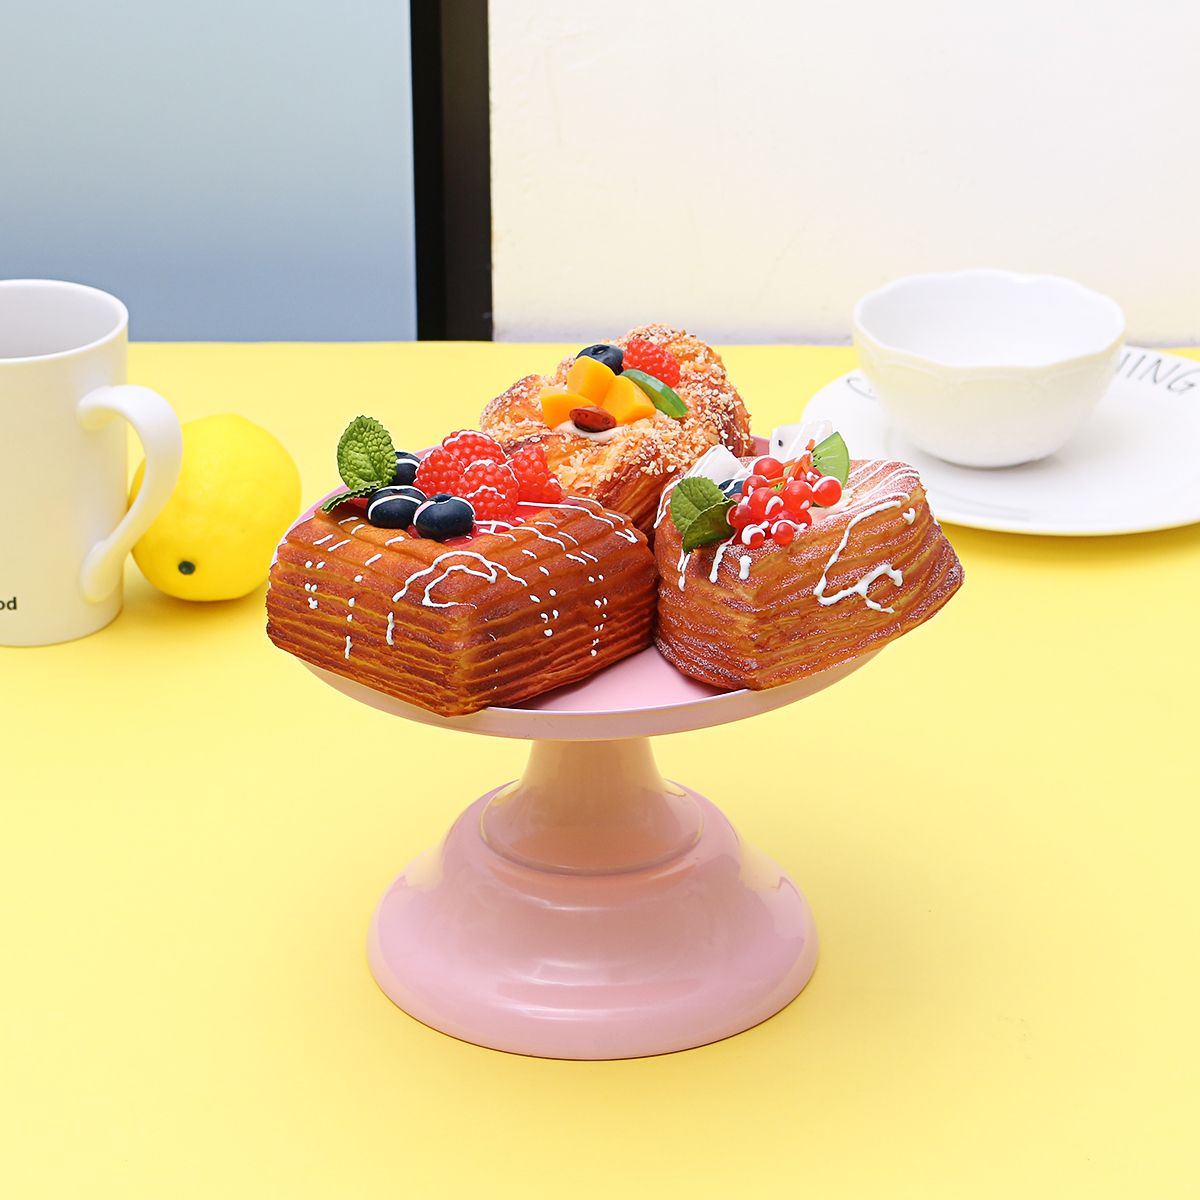 8Inch-Iron-Round-Cake-Stand-Pedestal-Dessert-Holder-Wedding-Party-Decorations-1490085